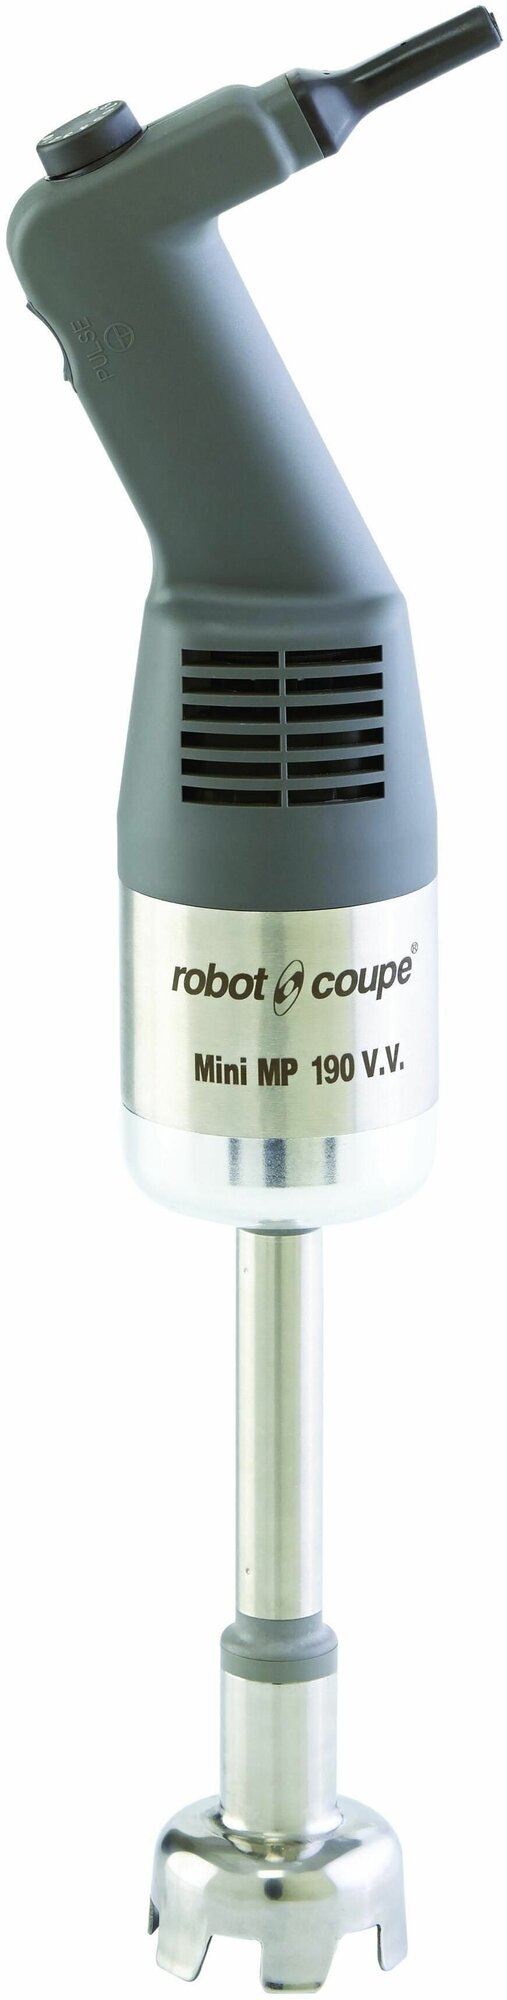 Миксер ручной ROBOT COUPE Mini MP 190 V. V, до 12500 об/мин, для объема 9л, измельчитель электрический кухонный, 0,27 кВт